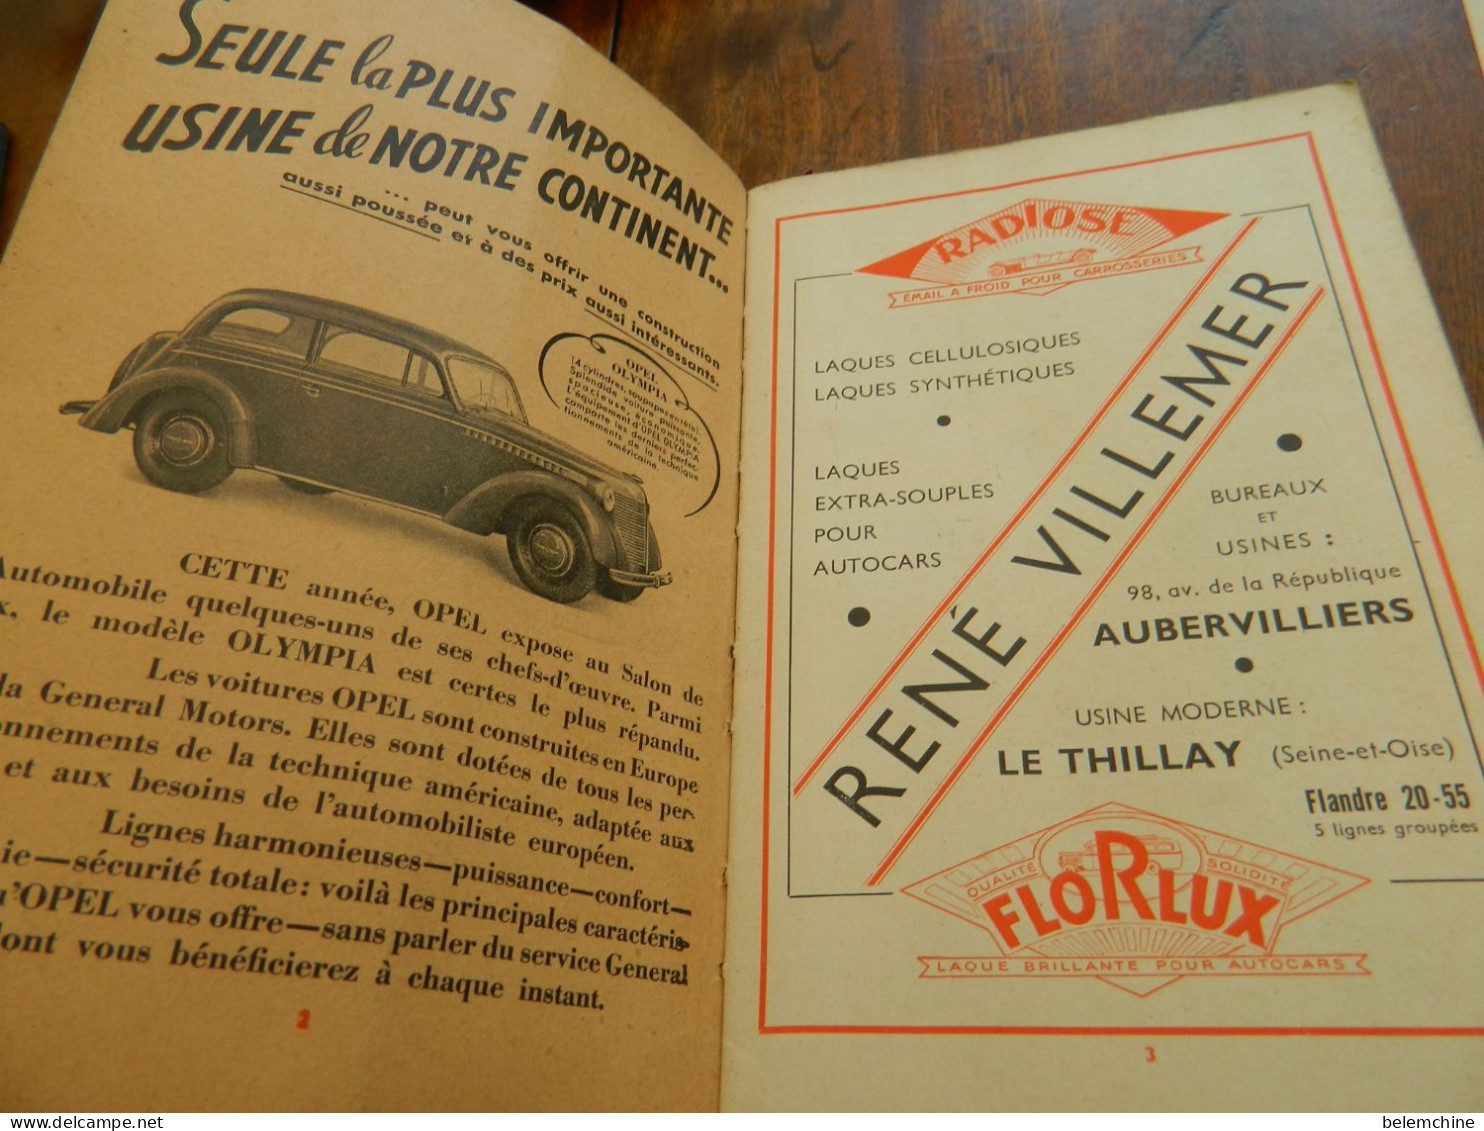 CATALOGUE OFFICIEL DU 32 ème SALON DE L'AUTOMOBILE DU CYCLE ET DES SPORTS  PARIS GRAND PALAIS 1938 - Auto's